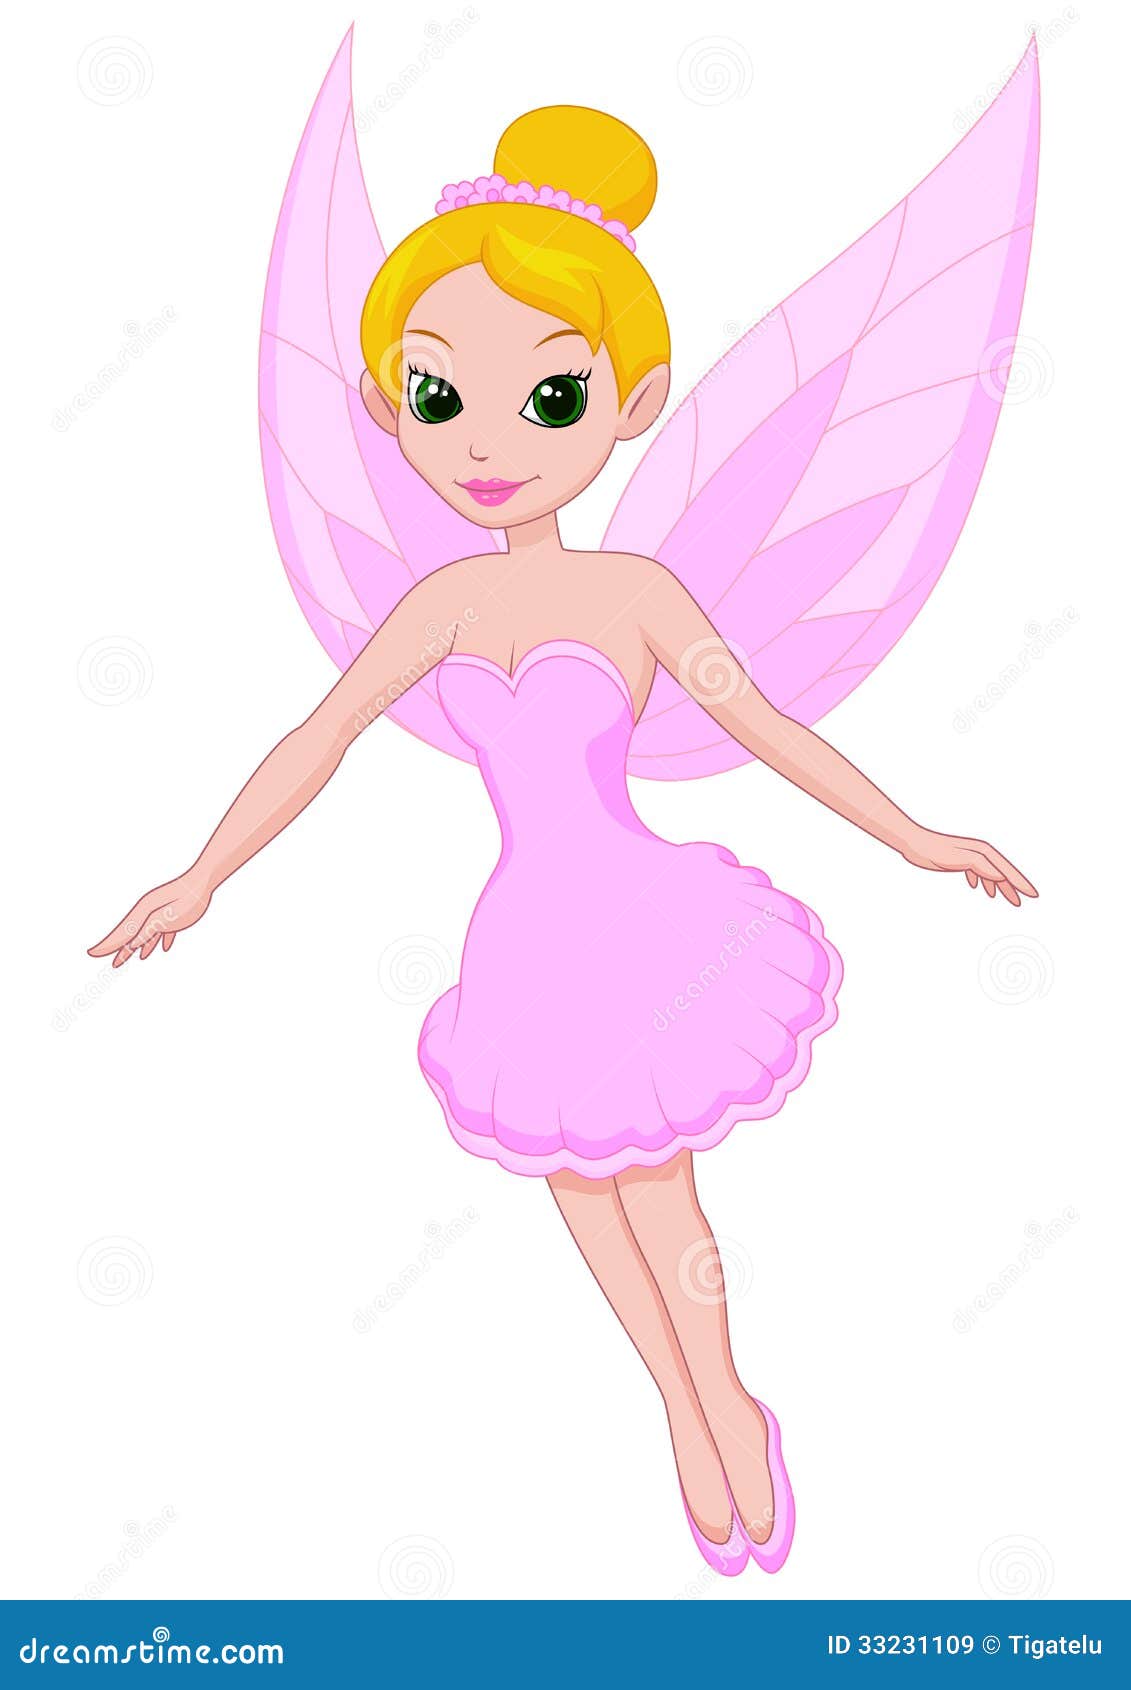 Cute fairy cartoon stock vector. Illustration of fairytale - 33231109